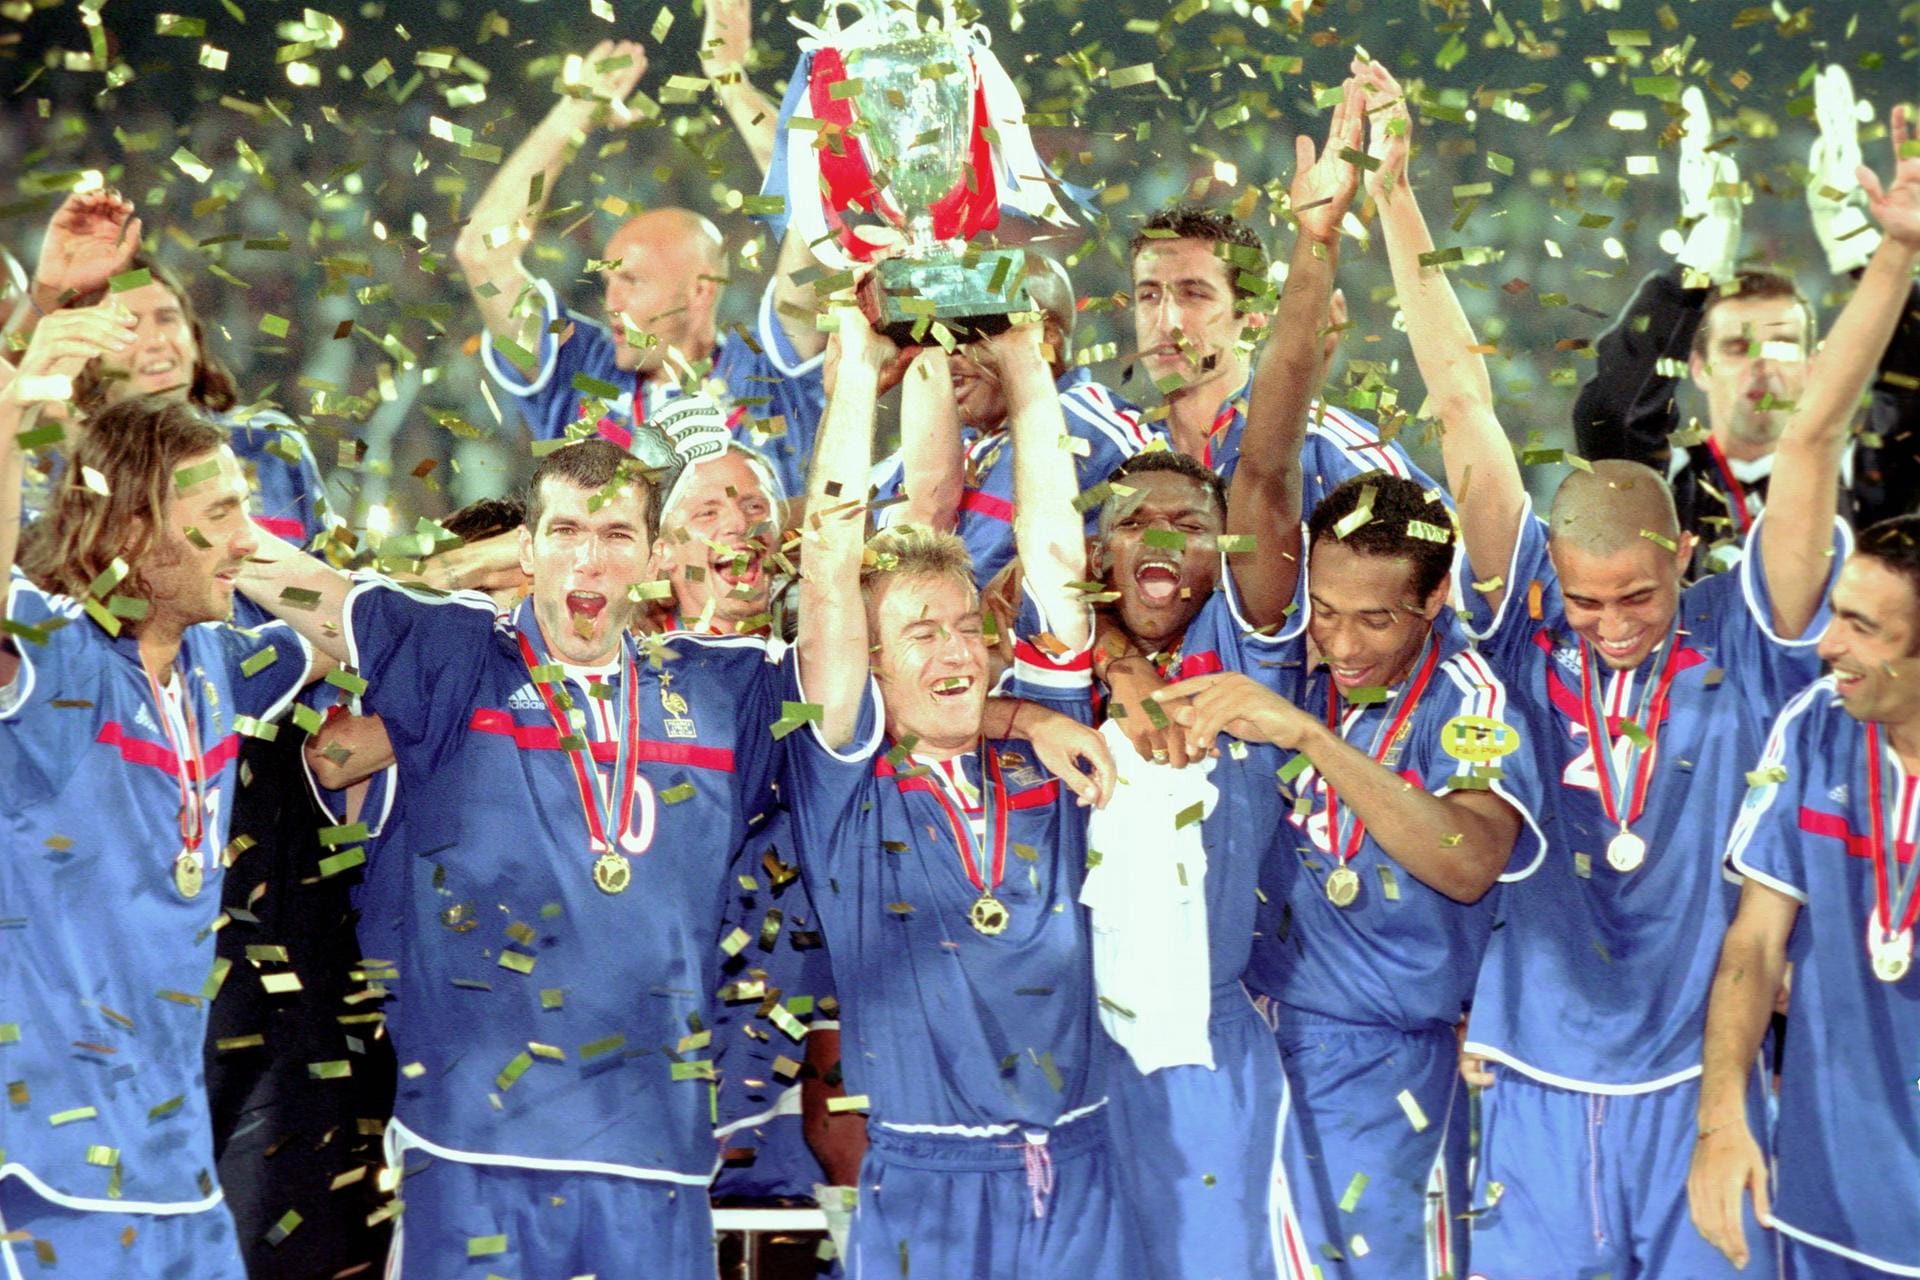 EM 2000: In Rotterdam gewann die französische Nationalmannschaft zwei Jahre nach ihrem WM-Titel auch die Europameisterschaft. So einen Doppelgewinn schafften nur zwei Mannschaften: Deutschland (1972, 1974) und Spanien (2008, 2010).